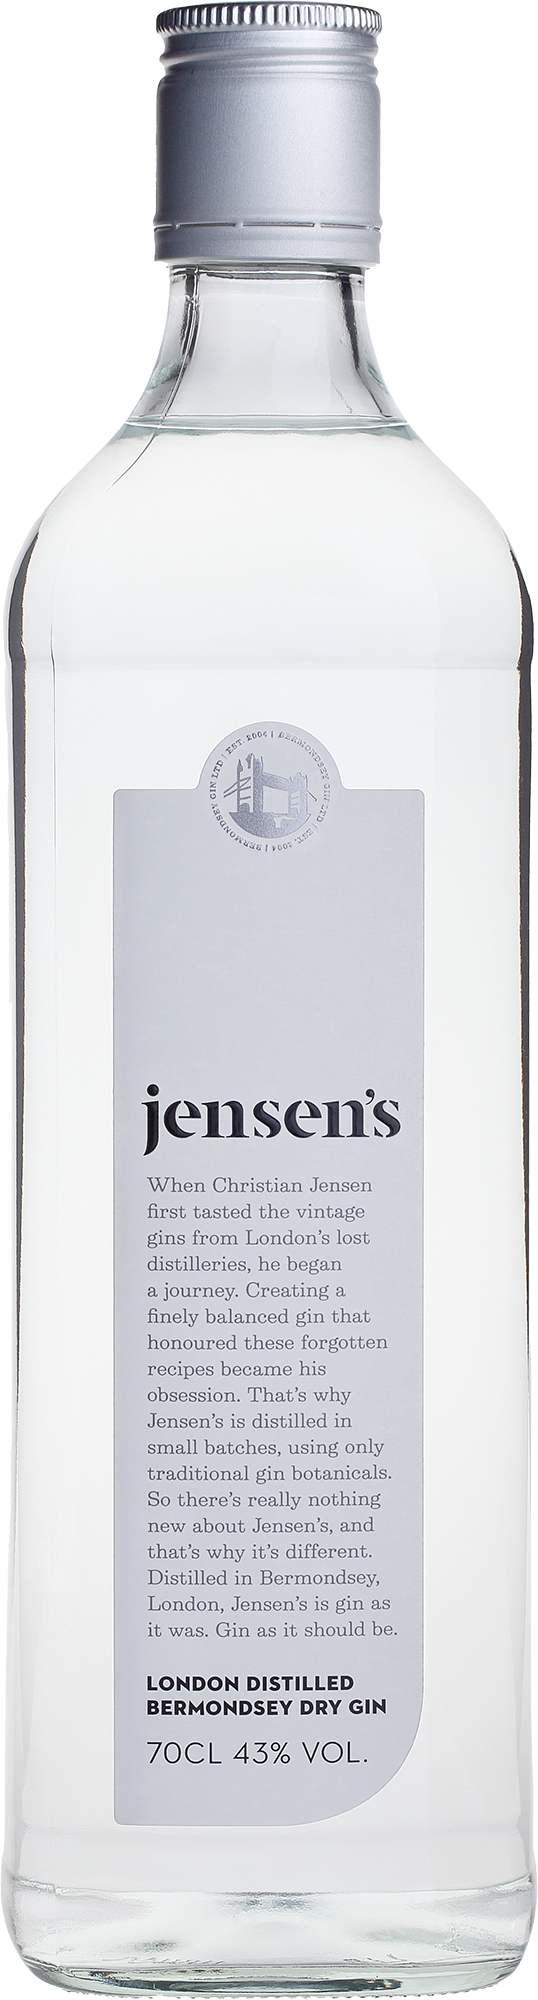 Jensen's Bermondsey Dry Gin Wine